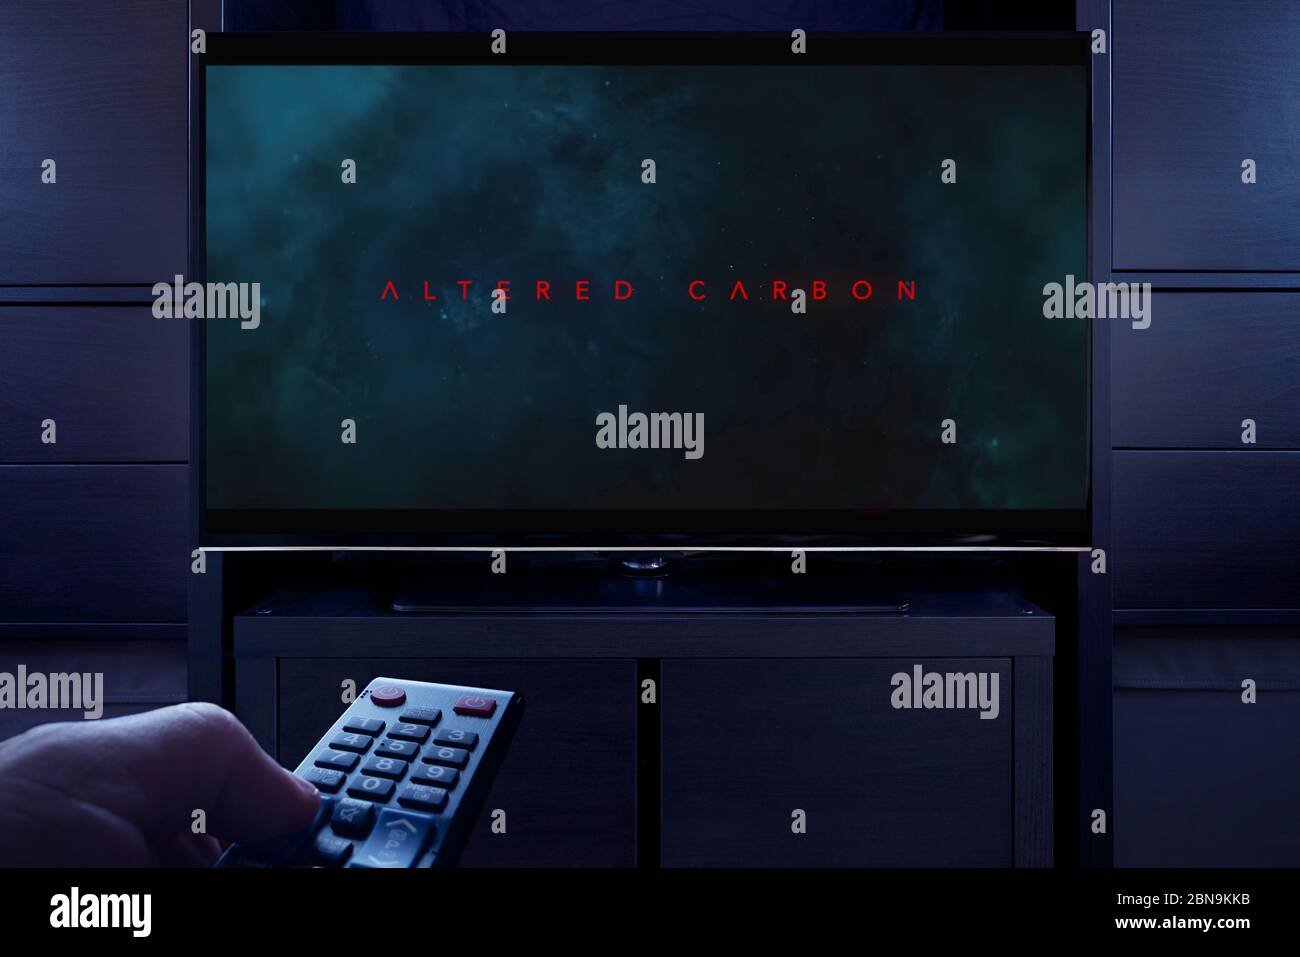 Un uomo punta un telecomando TV verso il televisore che visualizza la schermata del titolo principale Altered Carbon (solo per uso editoriale). Foto Stock